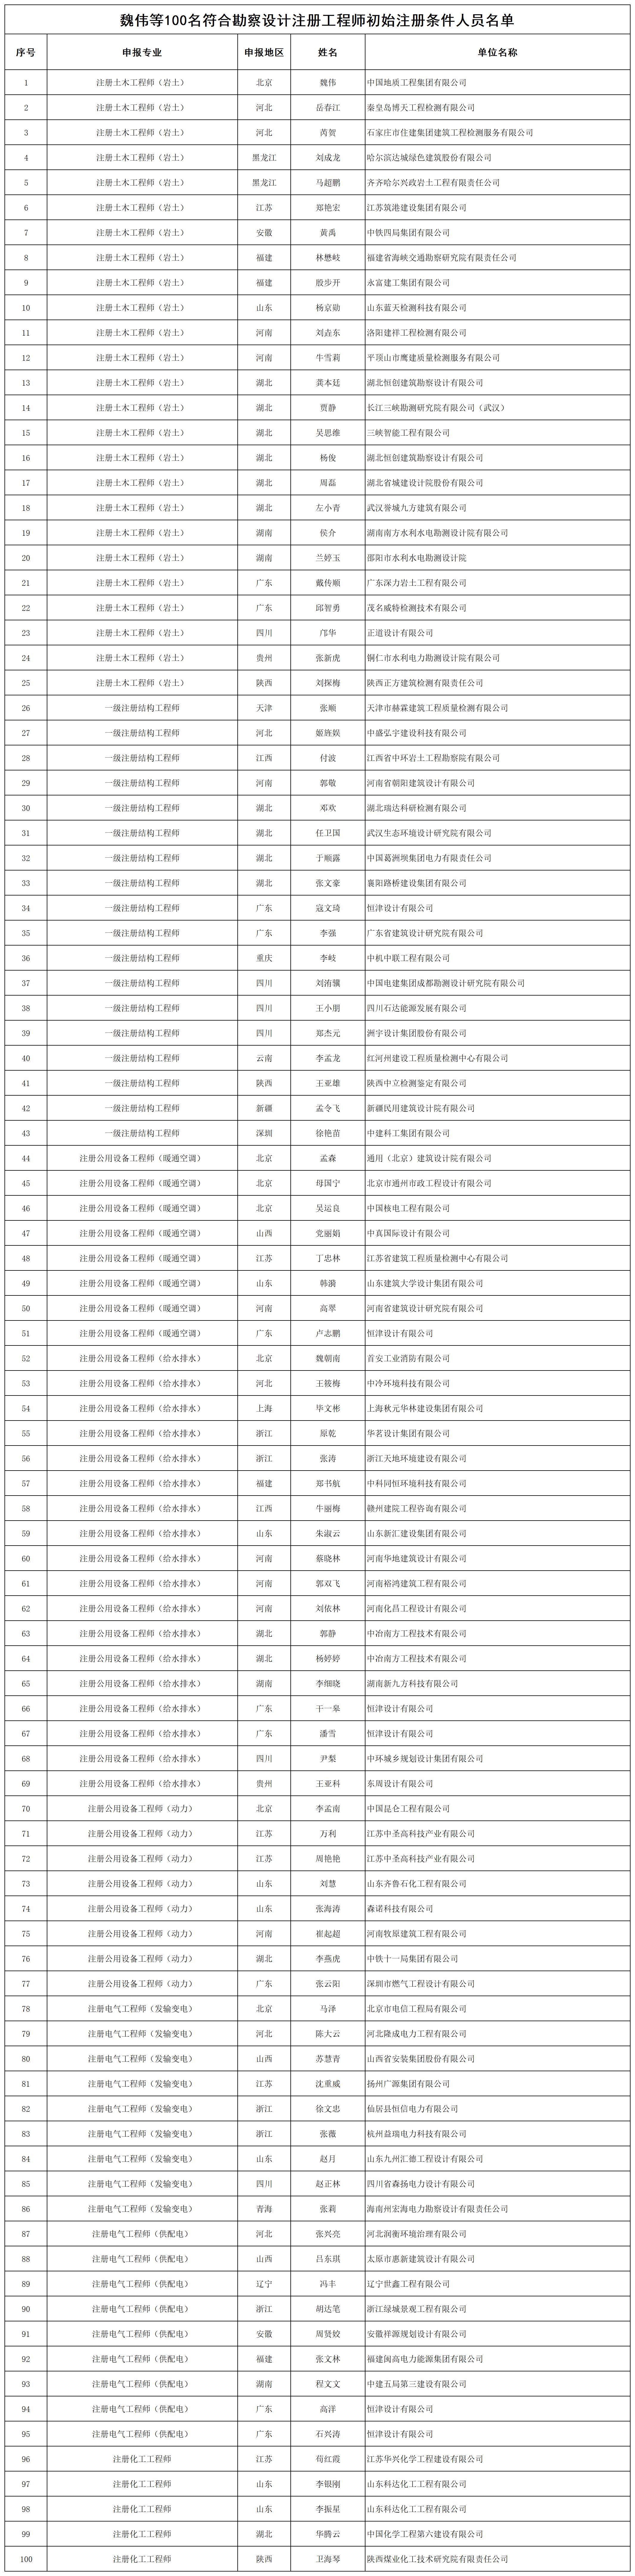 魏伟等100名符合勘察设计注册工程师初始注册条件人员名单_打印结果.jpg